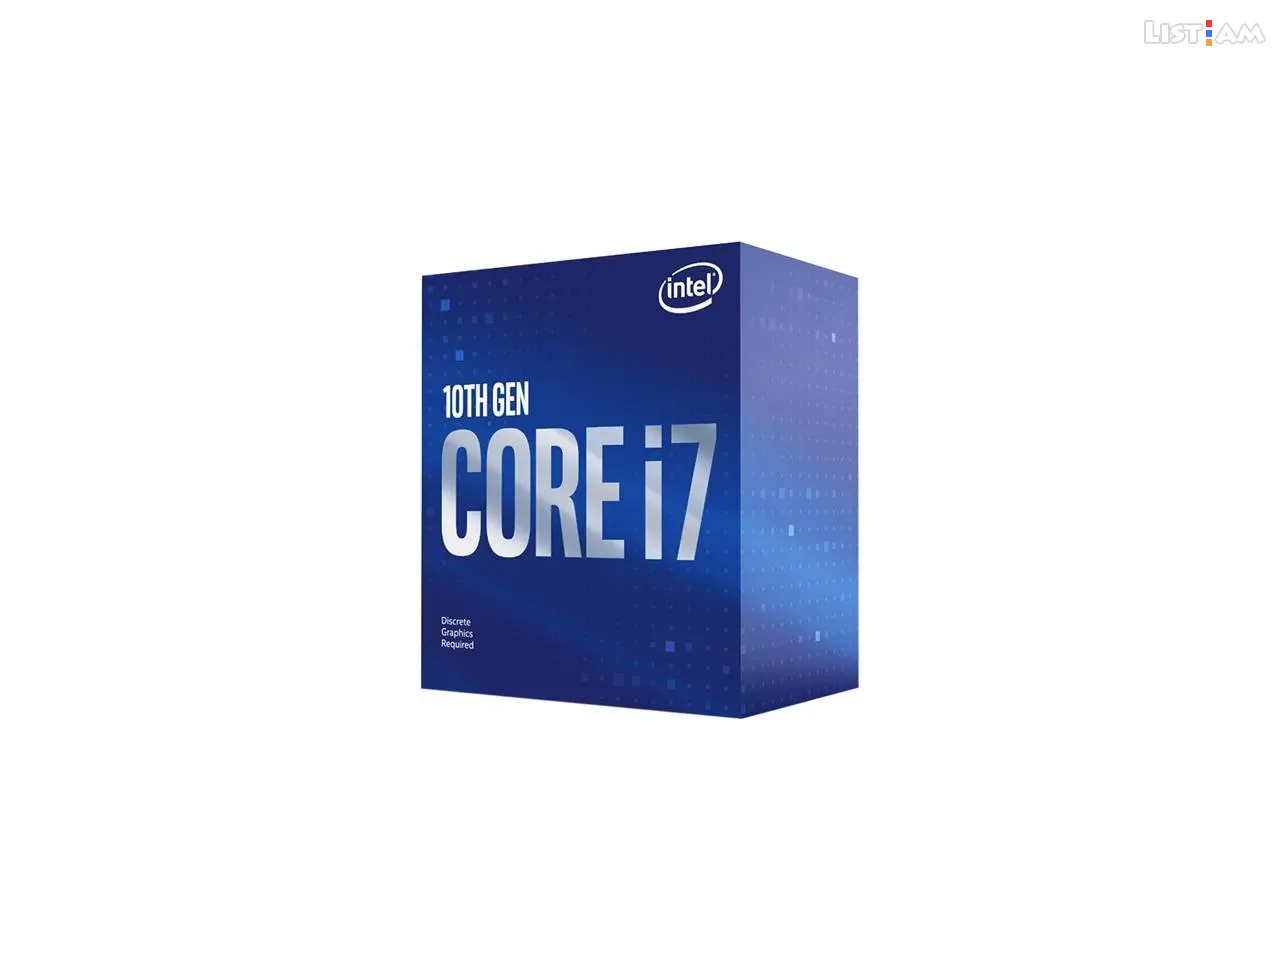 Intel Core i7-10700F - Computer Parts - List.am